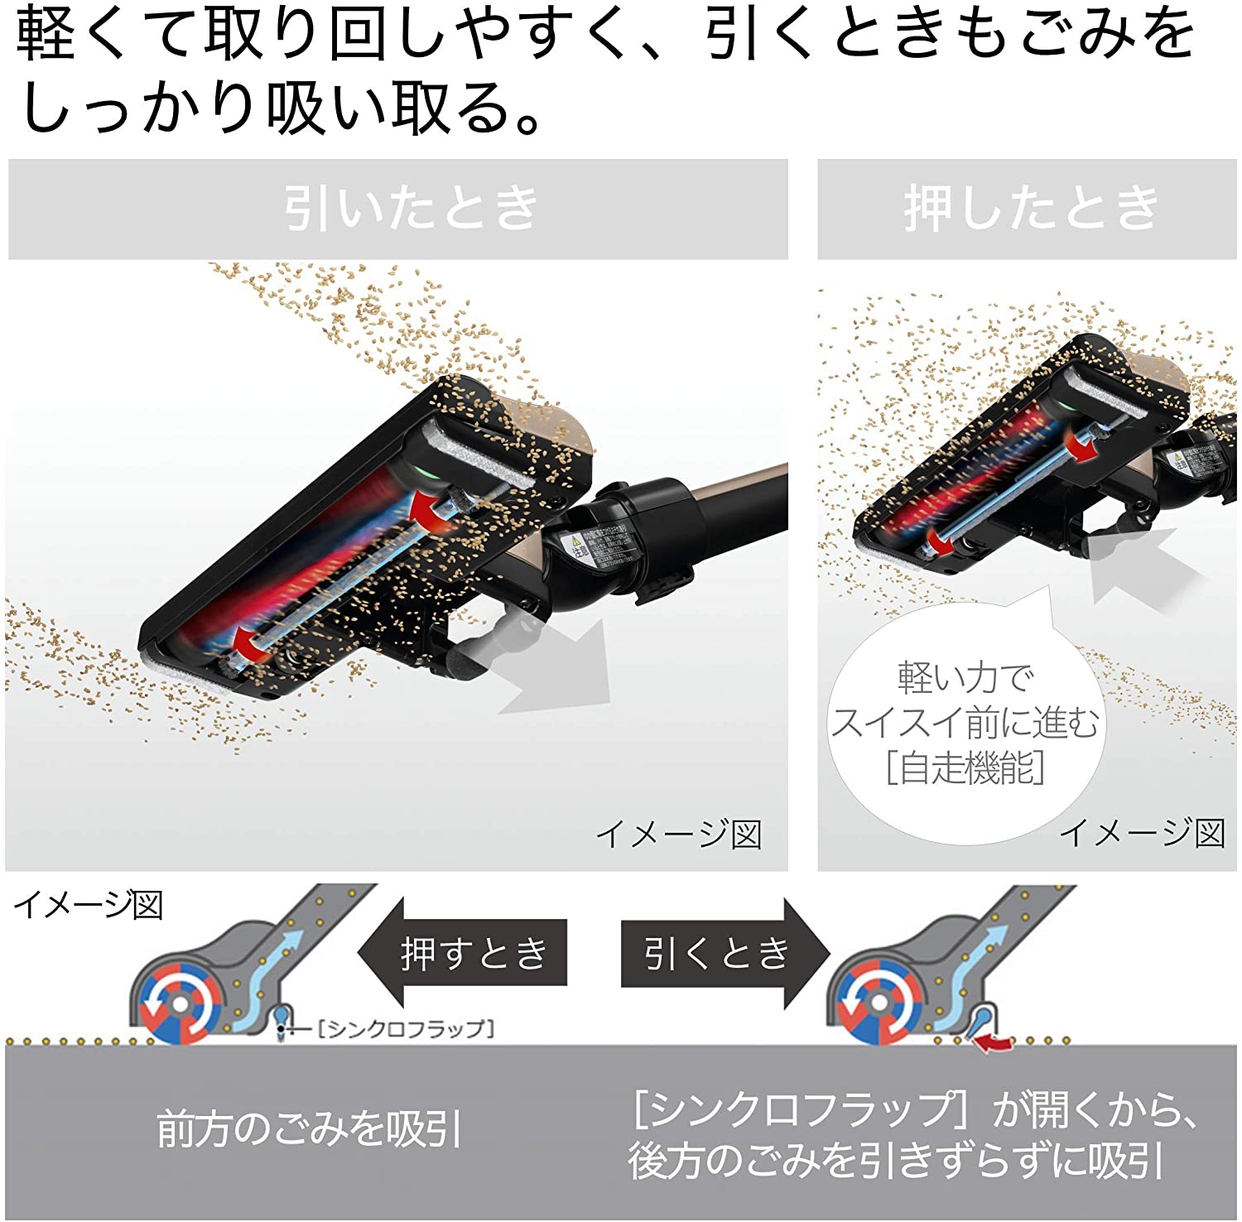 日立(HITACHI) ラクかるスティック PV-BL20Gの商品画像5 